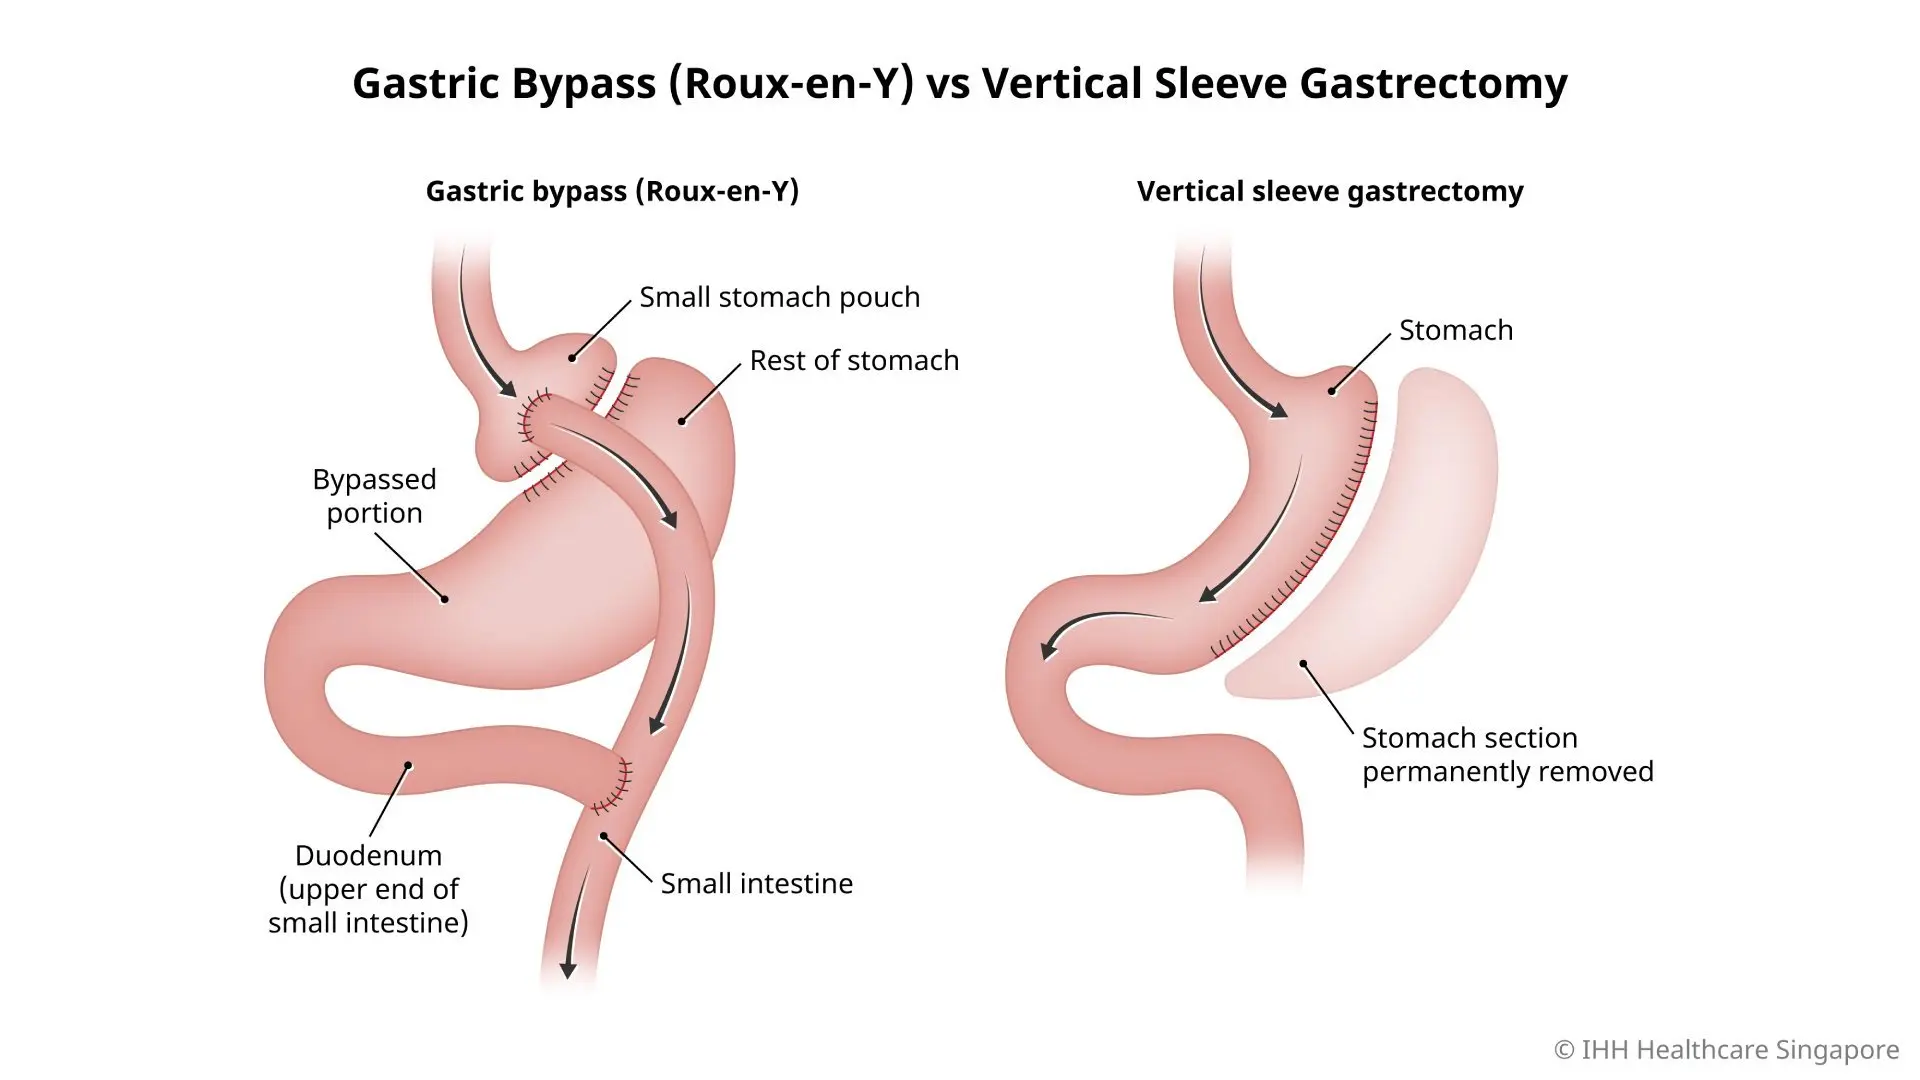 Perbedaan antara bypass lambung Roux-en-y dan gastrektomi lengan vertikal